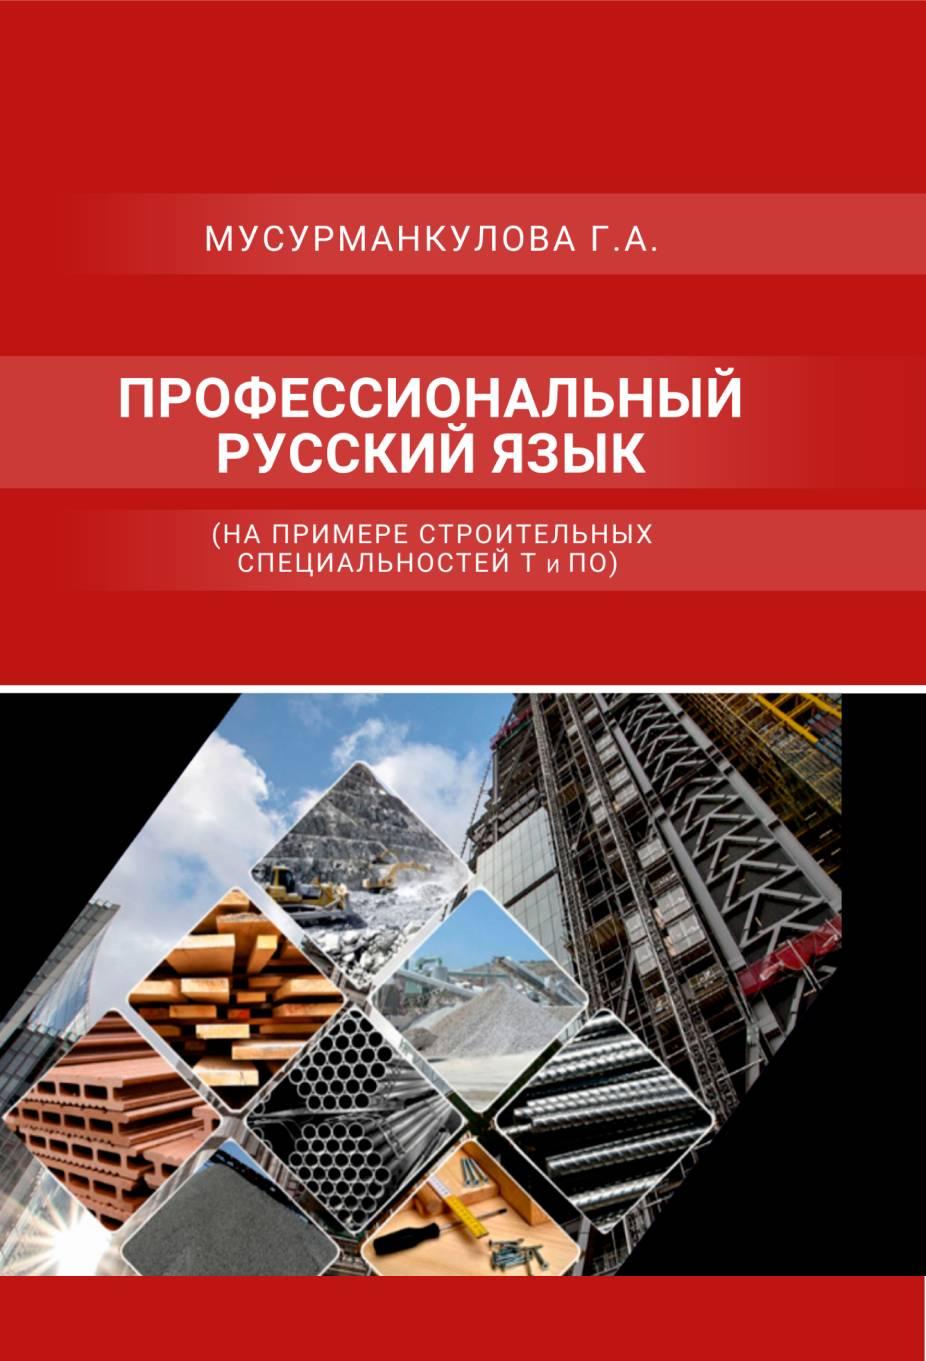 Профессиональный русский язык (на примере строительныхспециальностей Т и ПО) Учебно-методическое издание.